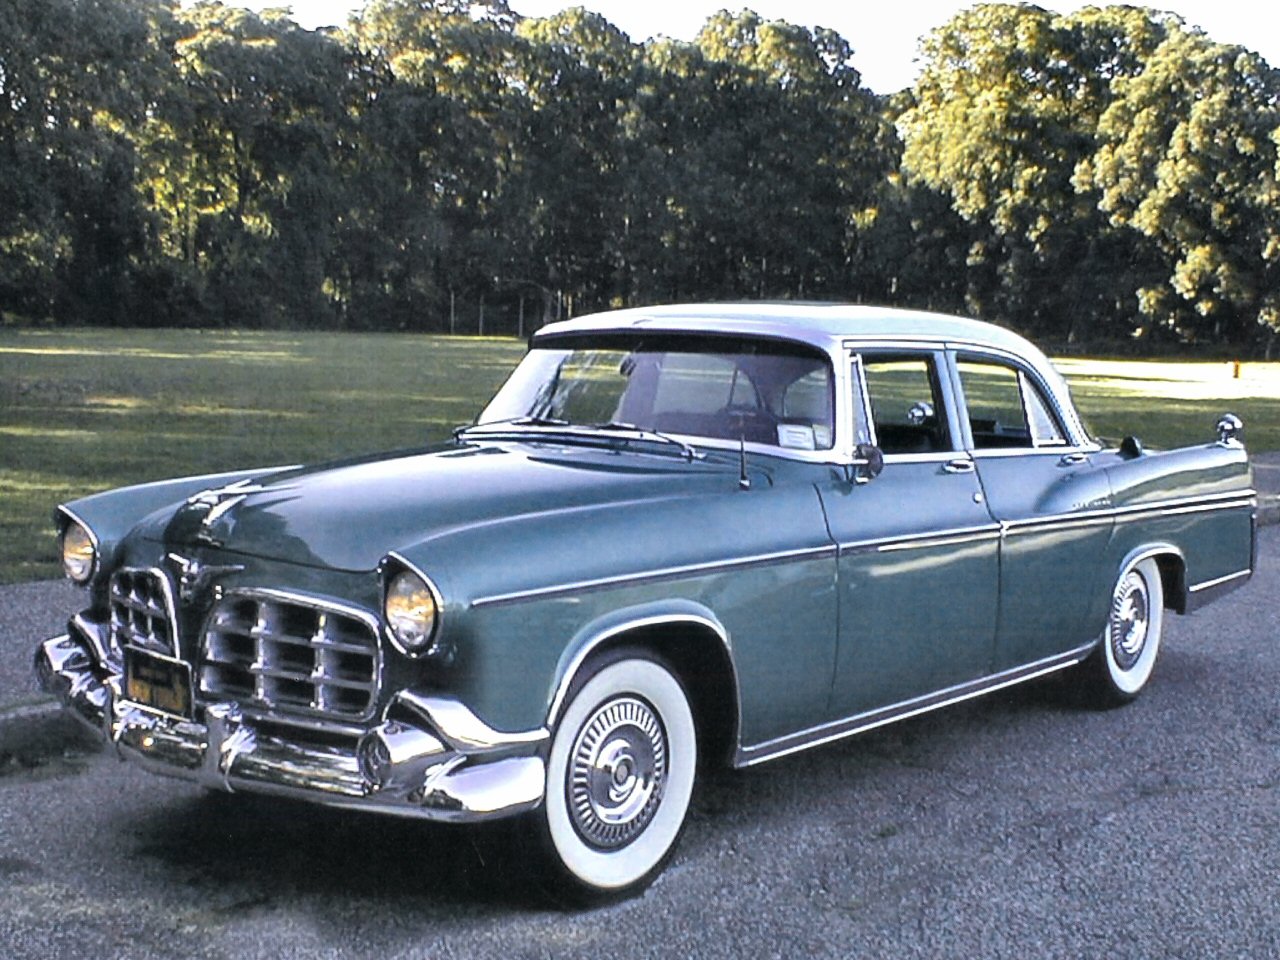 1956 Imperial 4 Door Sedan Grey Fvl   Transport Wallpaper Image